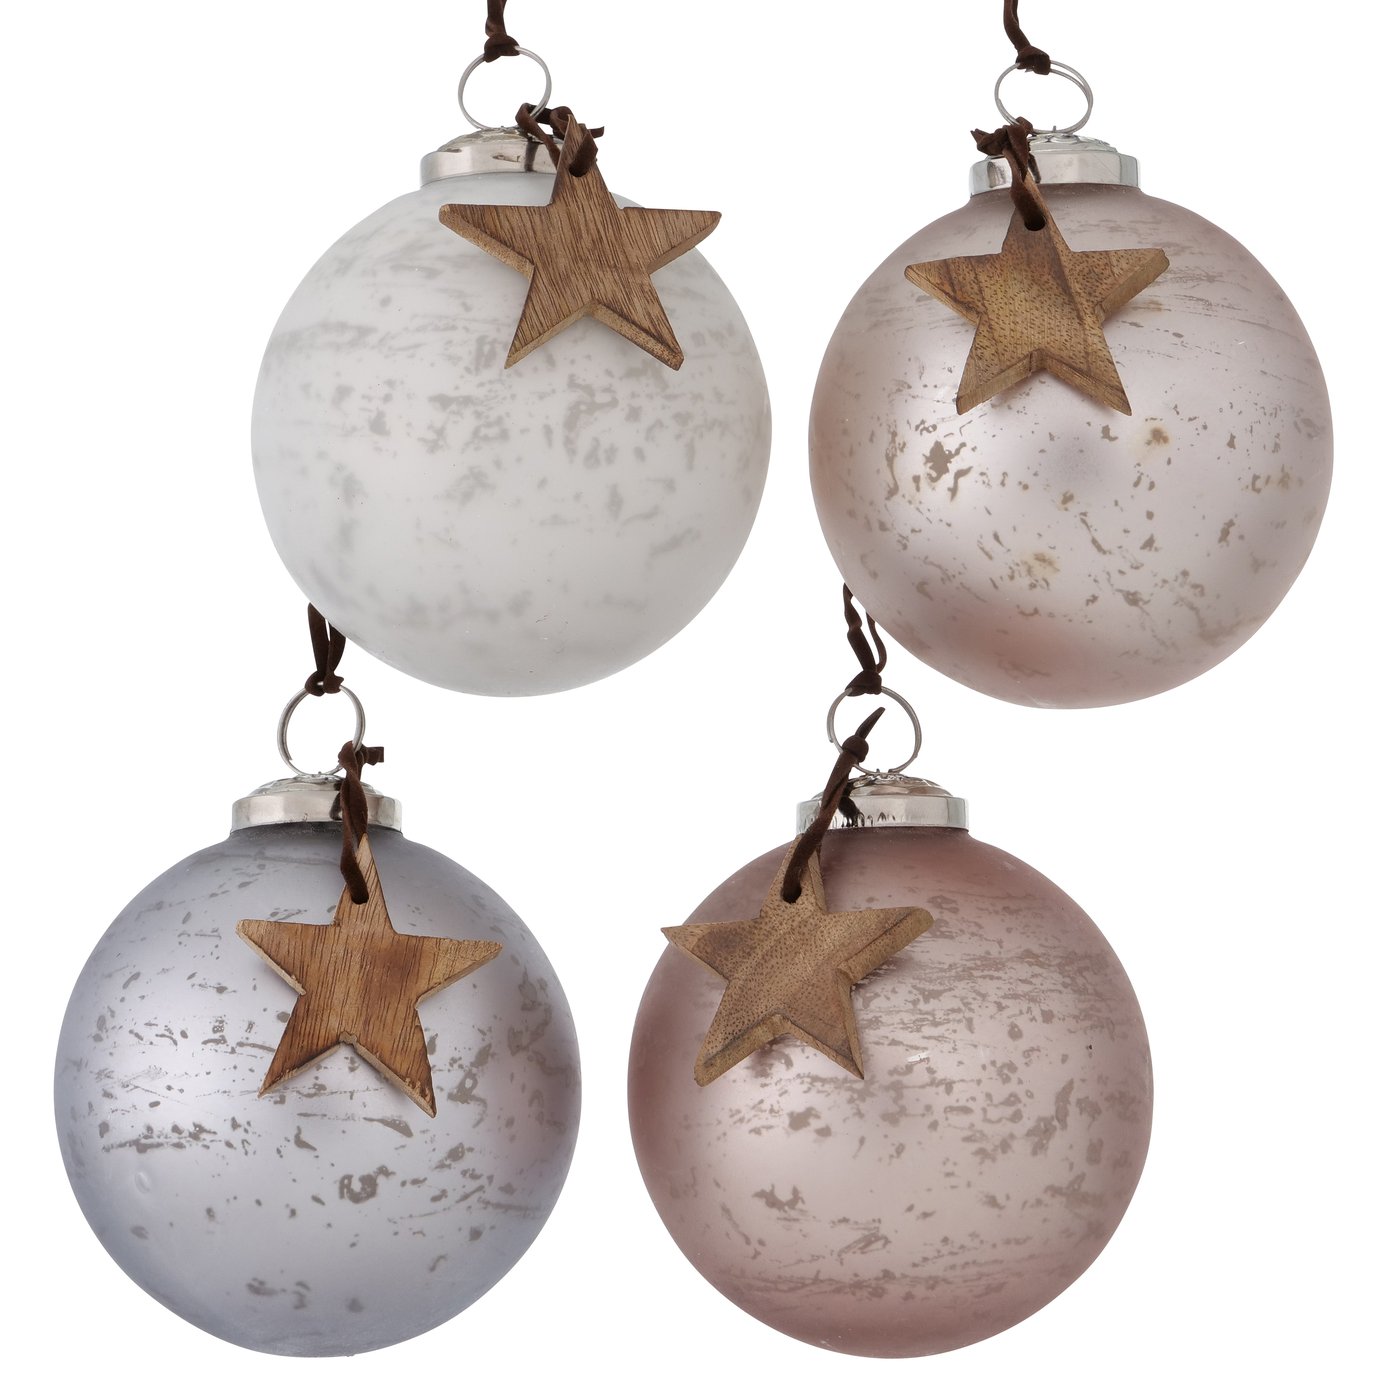 Glas Weihnachtskugel mit Stern grau beige weiß Christbaumkugeln, Weihnachtsbaumkugeln2015553, 4020607941076